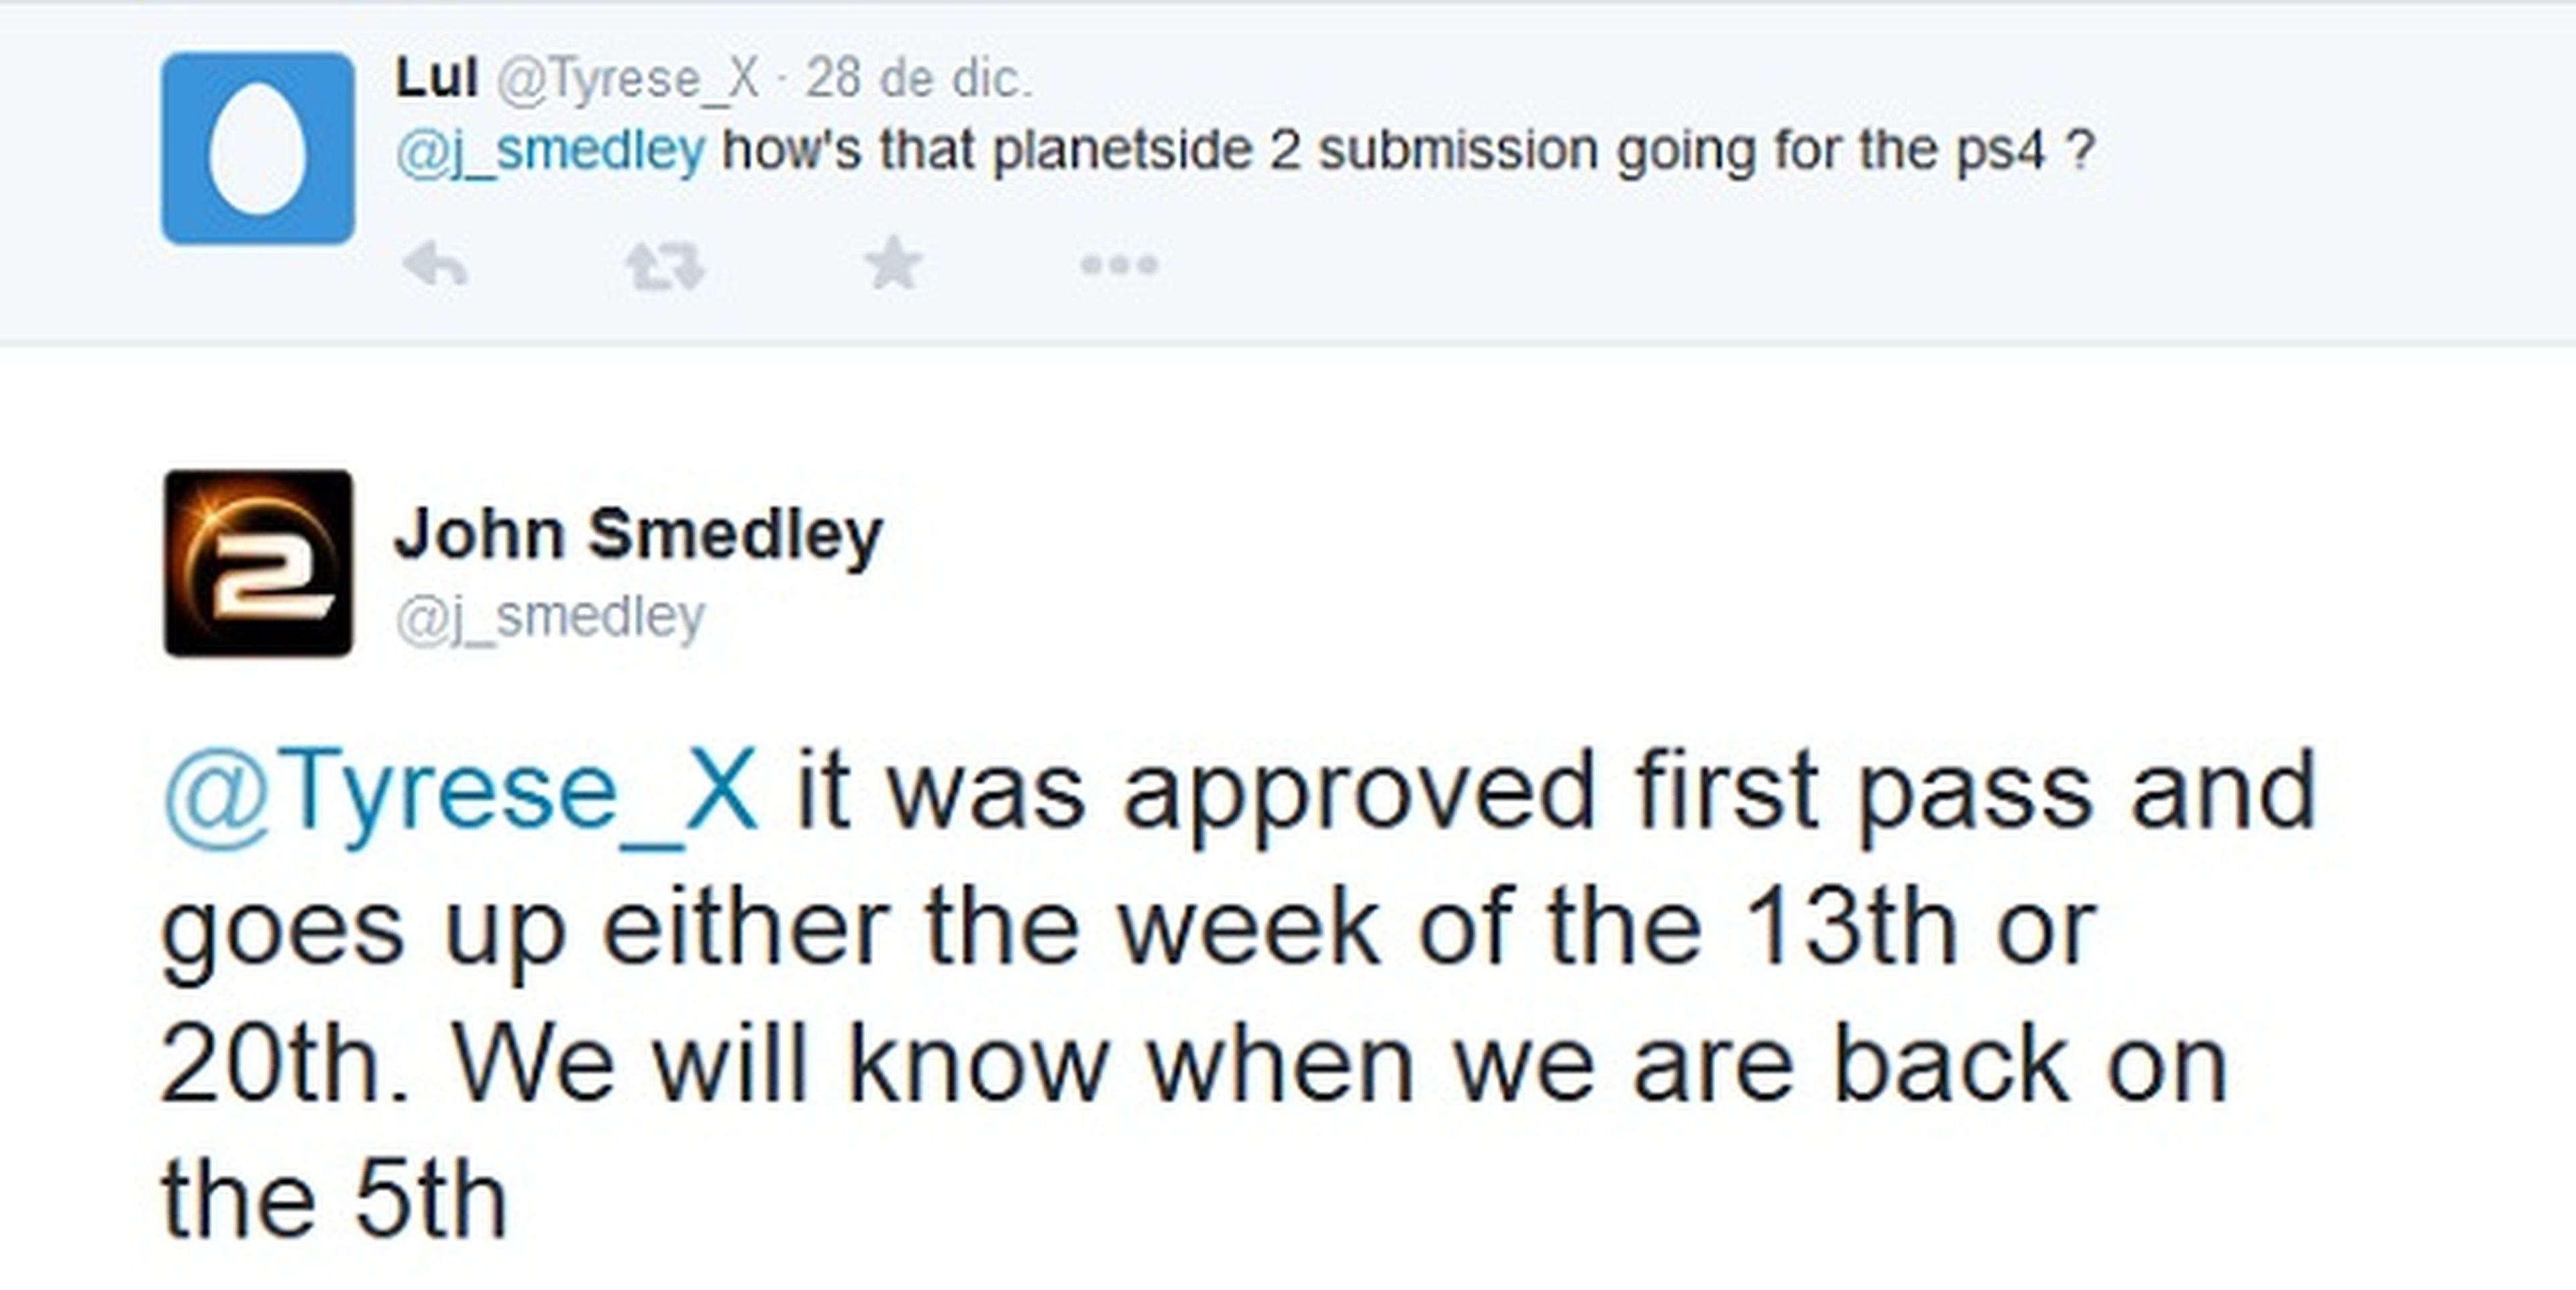 La beta de Planetside 2 llegará en enero a PS4